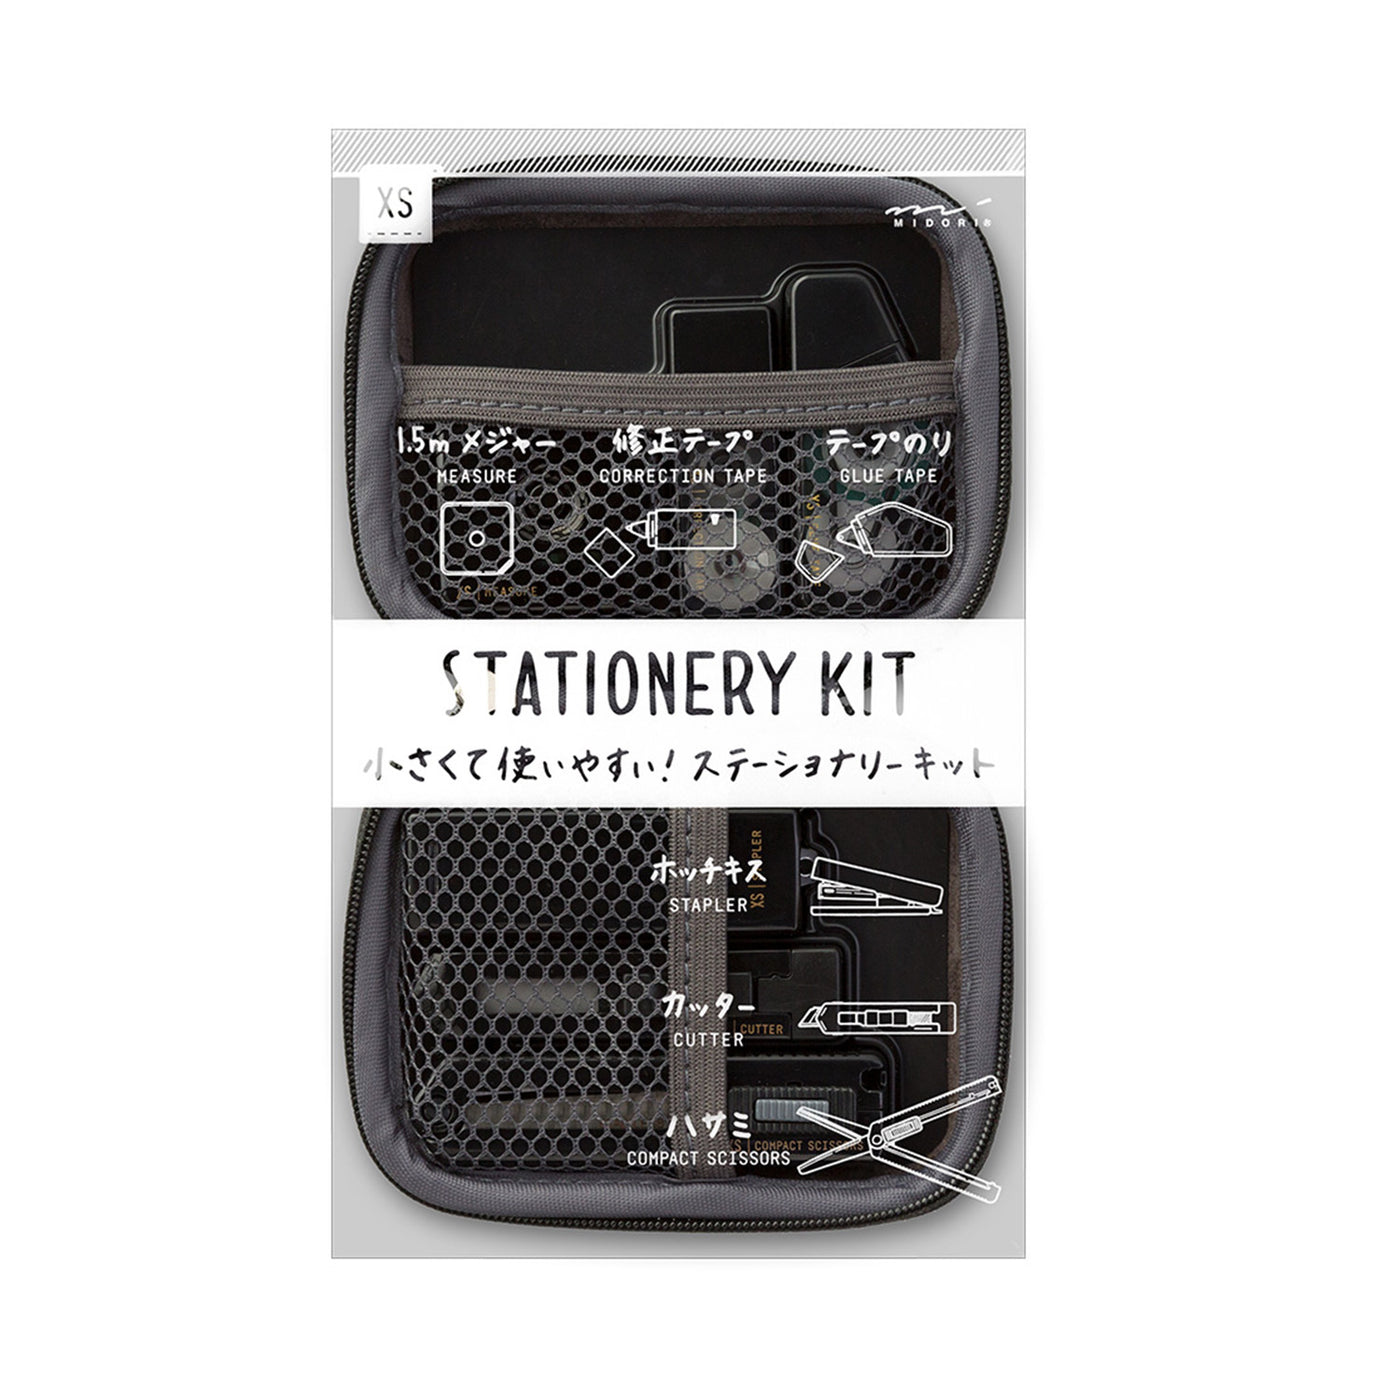 Midori XS Stationery Kit - Black